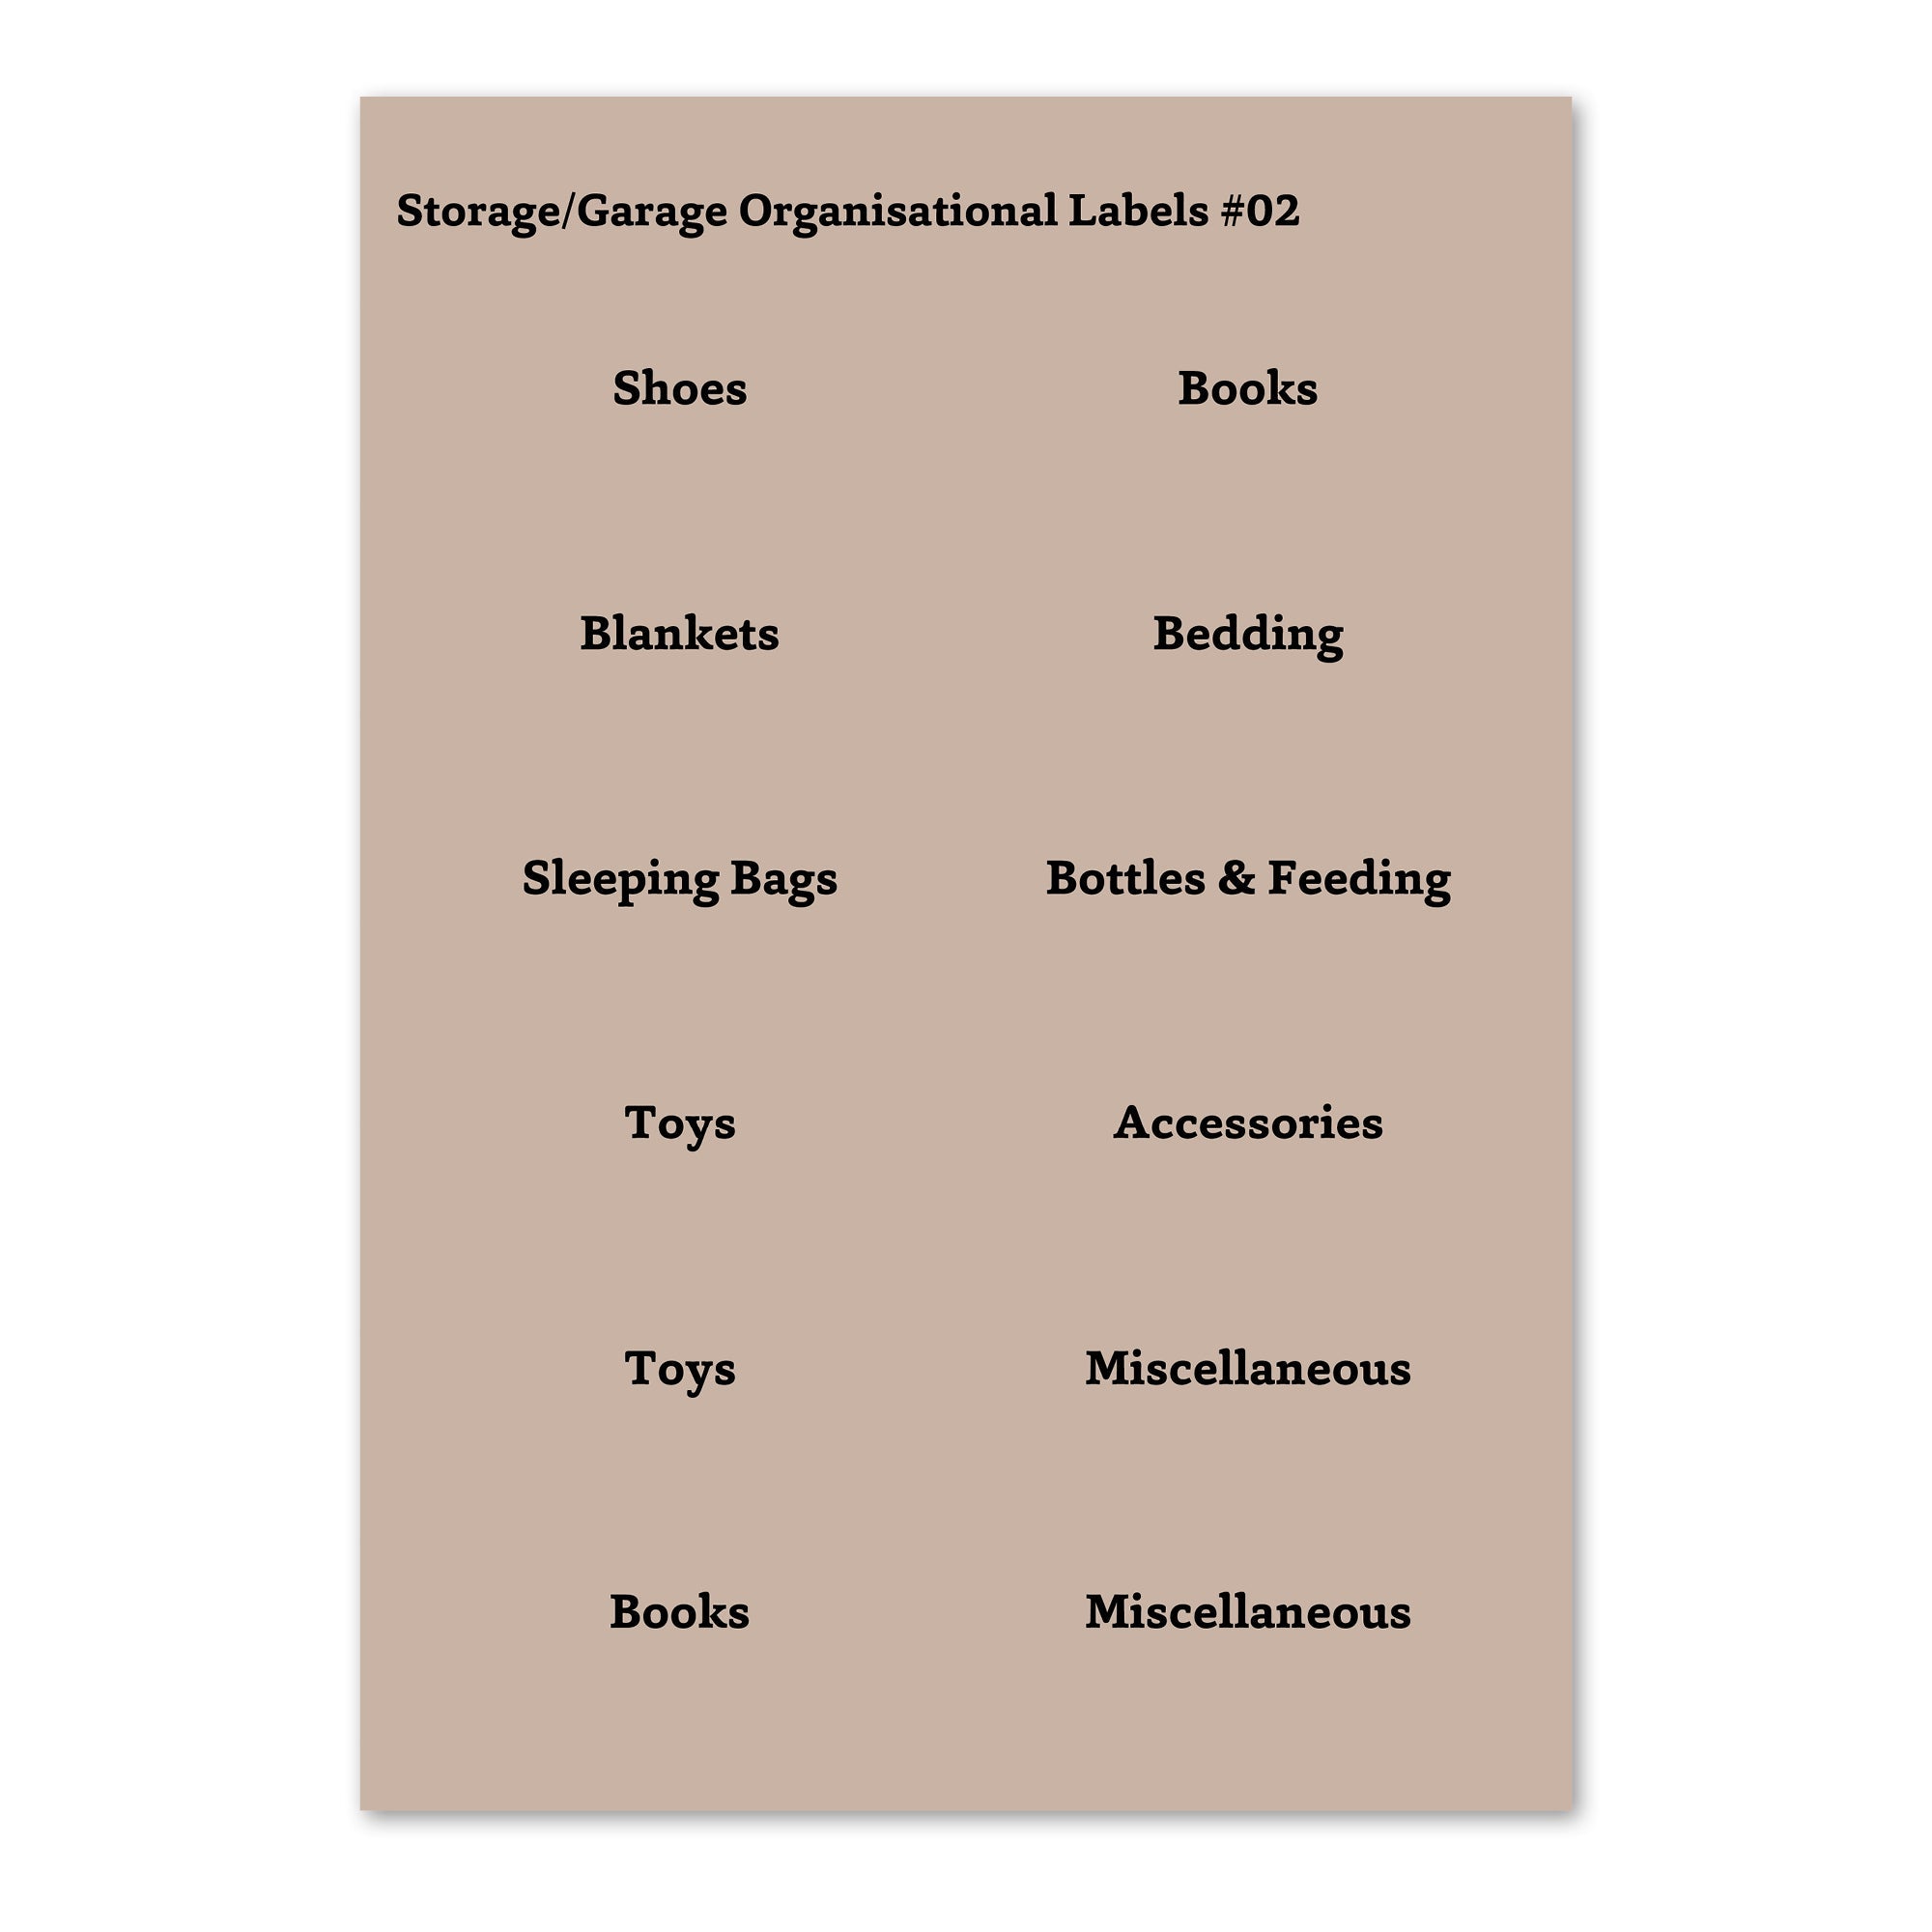 Garage Storage Labels - Sand Rectangular Organisation